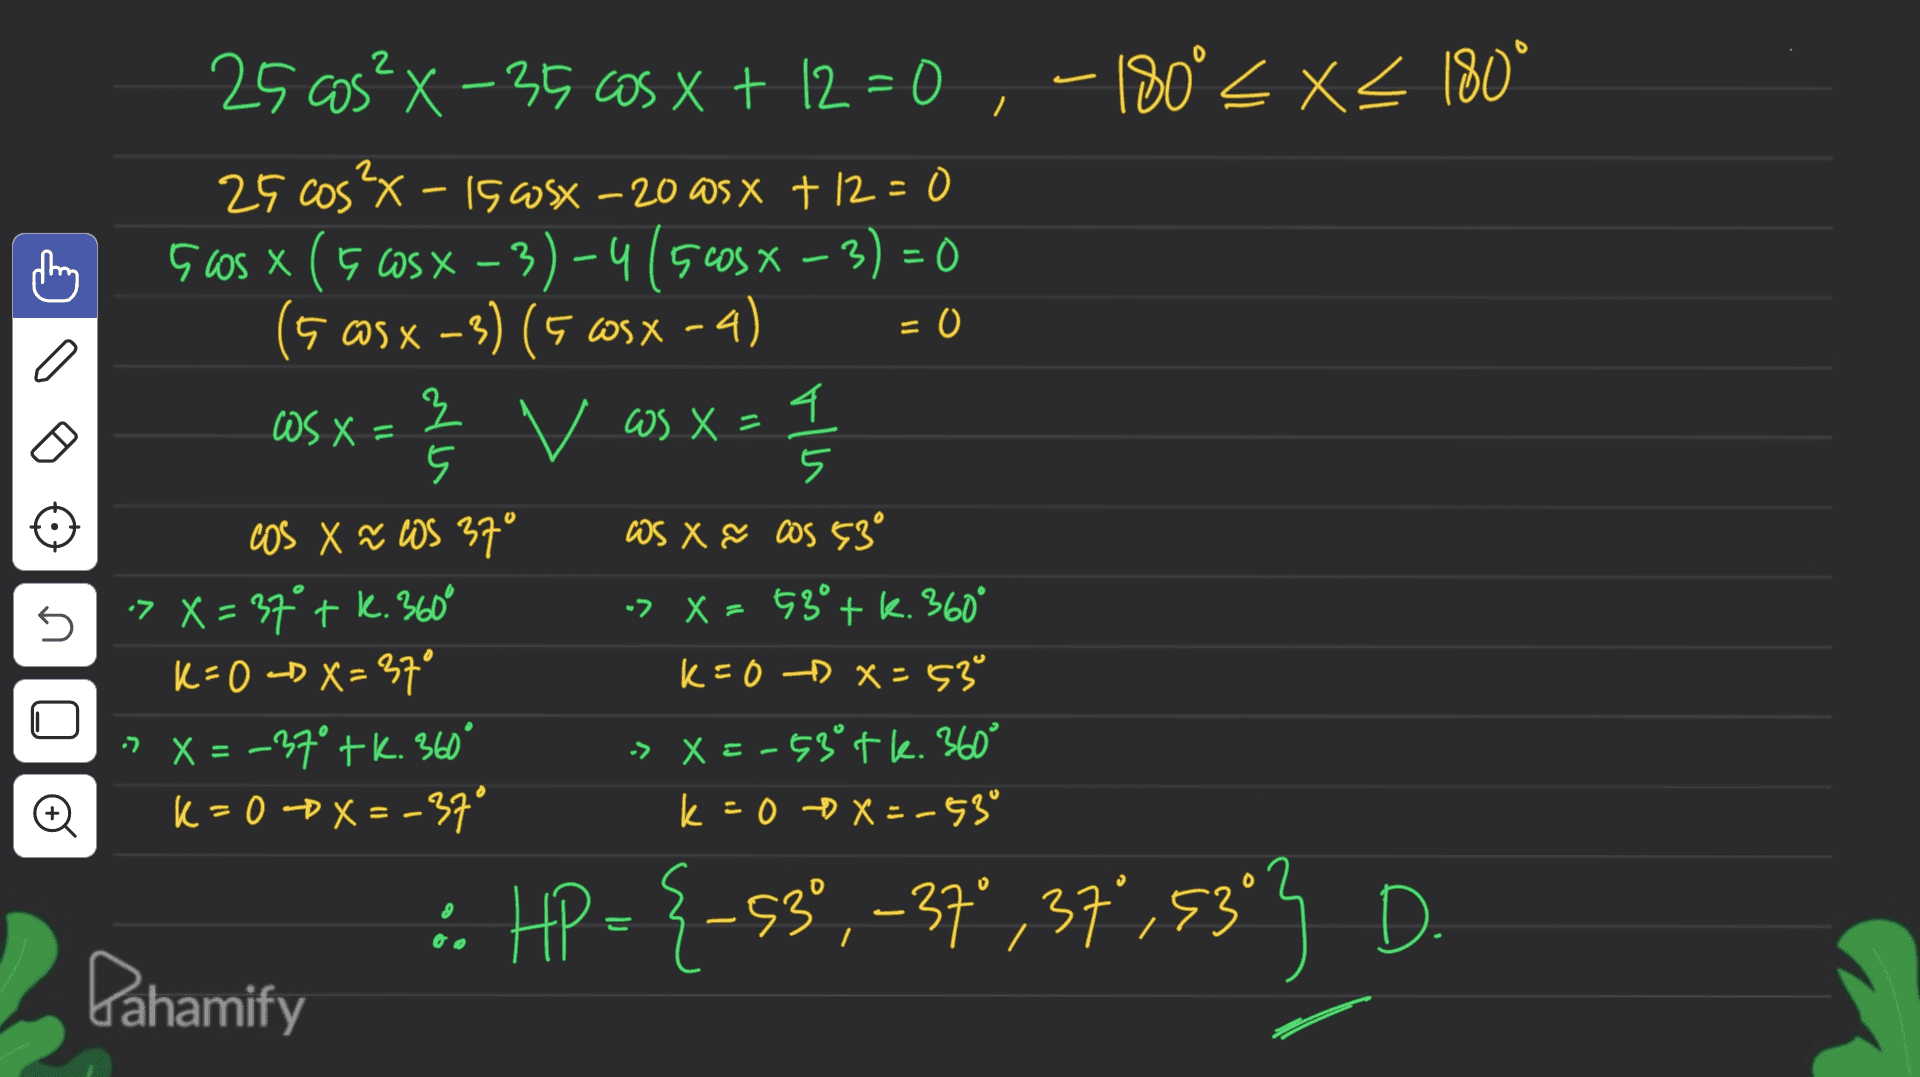 25 as? X-35 65 x + 12 = 0,-180° X4 180* 25 cos²x - 15 osx - 20 asx +12=0 Guos x (5 cos x – 3) – 4 ( 5cosx – 3) = 0 (5 @S X -3) (5 WSX-4) = 0 OS X = } 모 v as x= (= 1 / 5 cos X ~ WS 37° WS X & COS 53 > X = 37° tk. 360° -> X = 53° + k. 360° k=0 <D X=37° k=0 DX=53 X = -27° tk. 360° -> X = -53° tk. 360° K = 0 DX=-37° k=00x=-53° ก n Đ :. HP = {-53° , -37,37,3393 D. Pahamify 